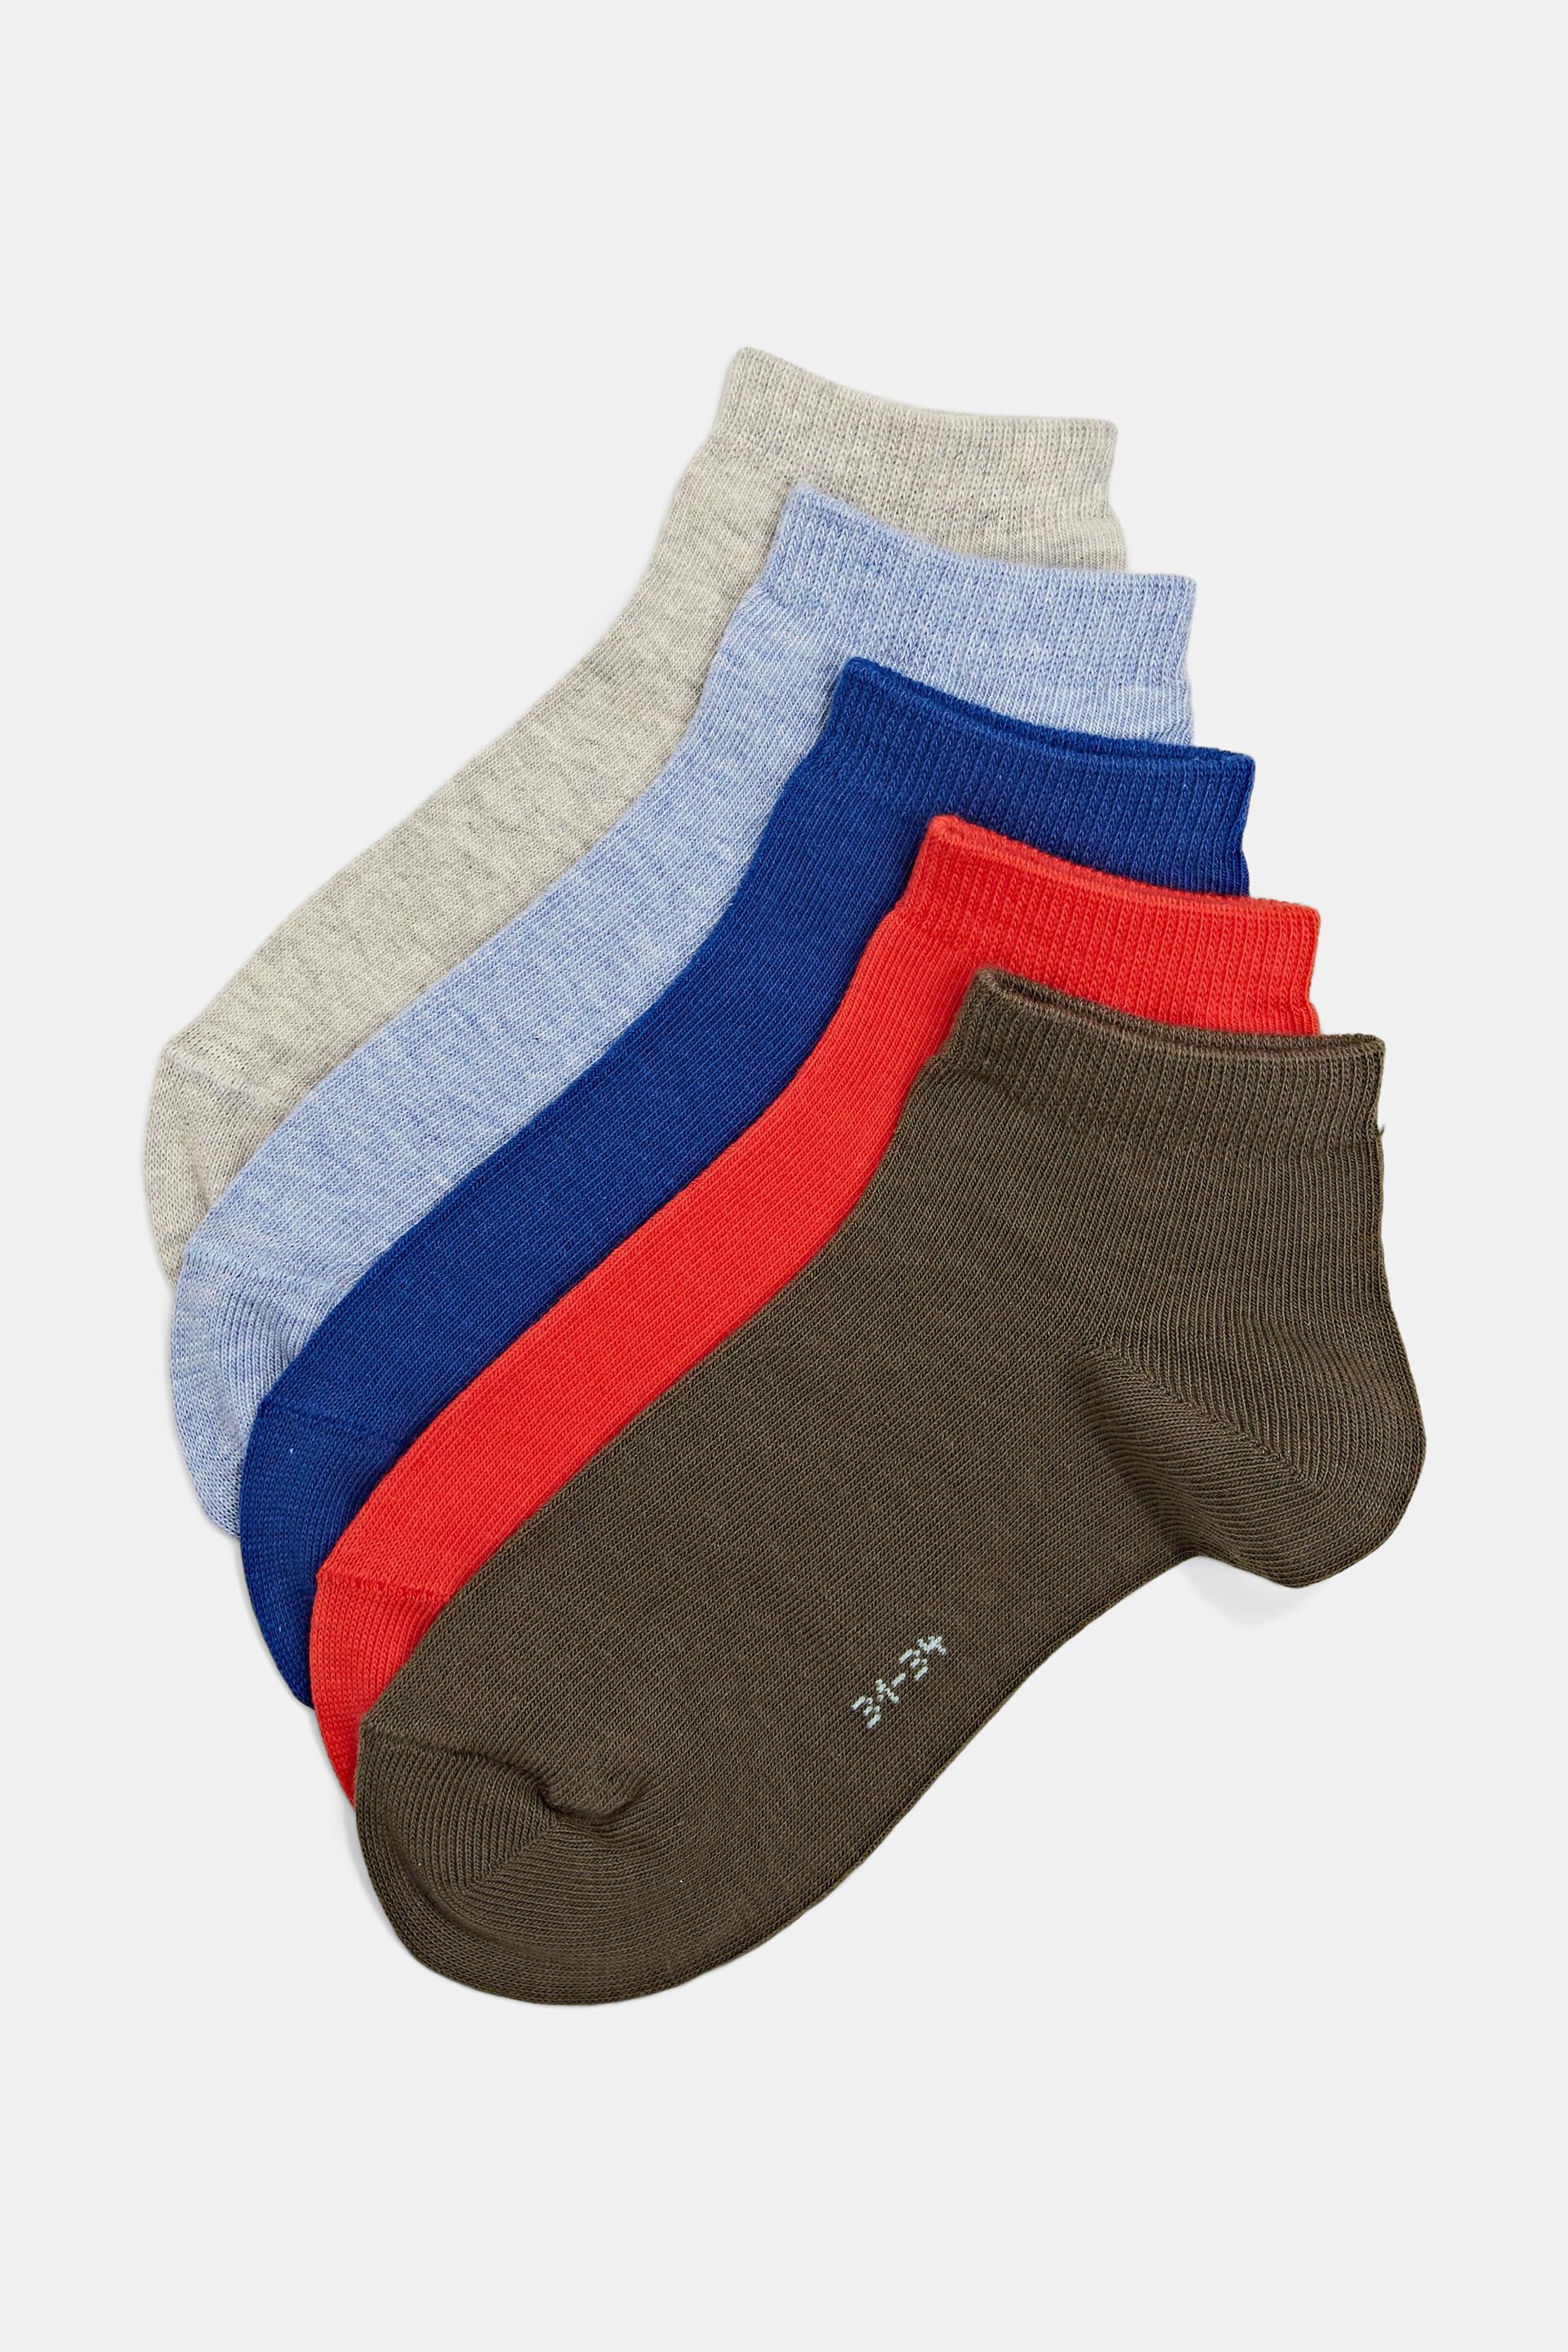 Esprit Outlet Packung mit 5 Paar einfarbigen Socken aus einer Bio-Baumwollmischung